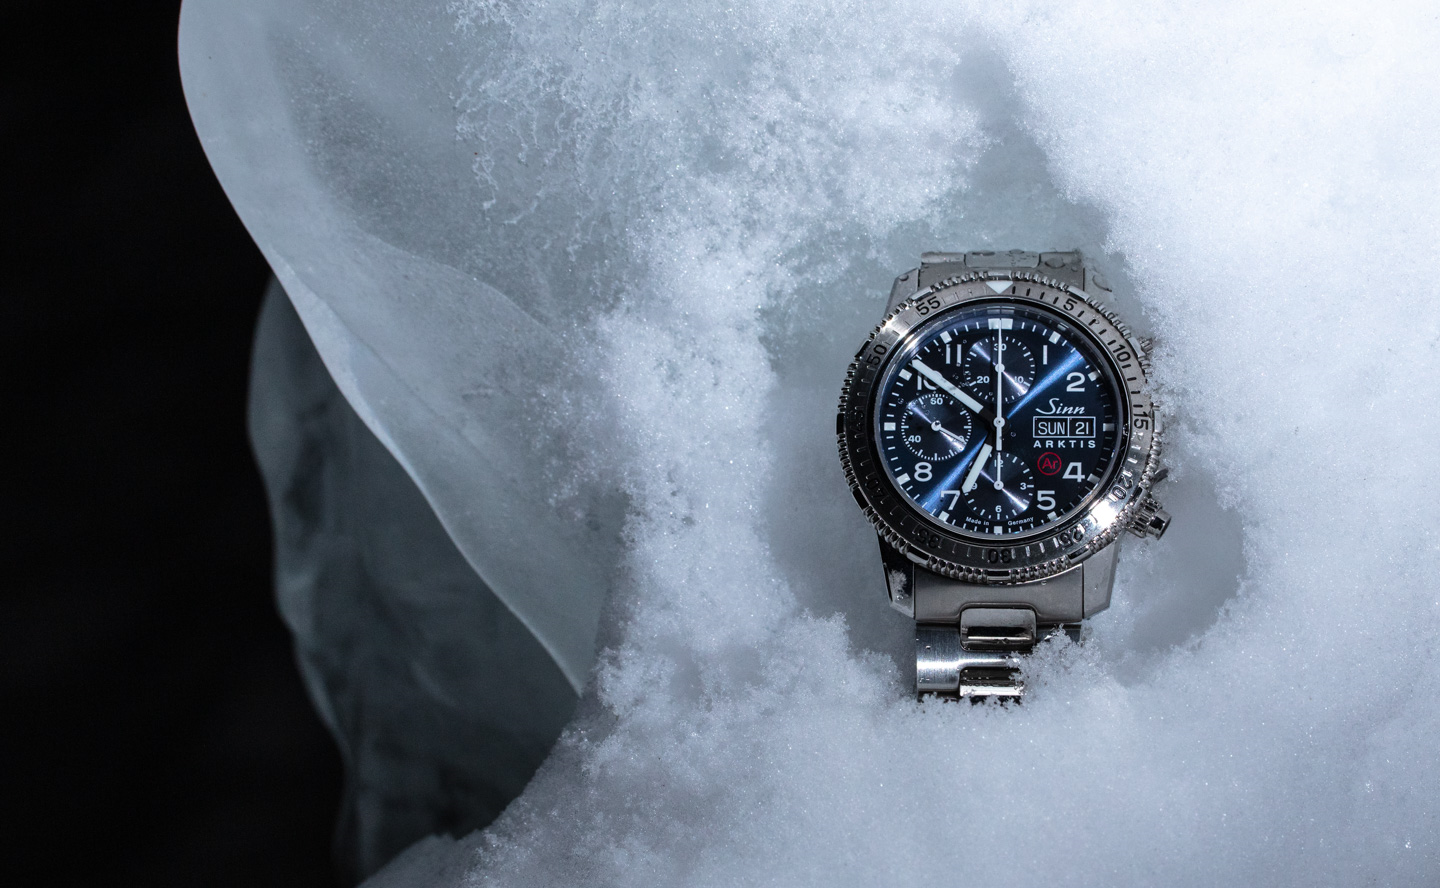 蓝色寒冷感十足的潜水款式-Sinn腕表品牌206 Arktis II型